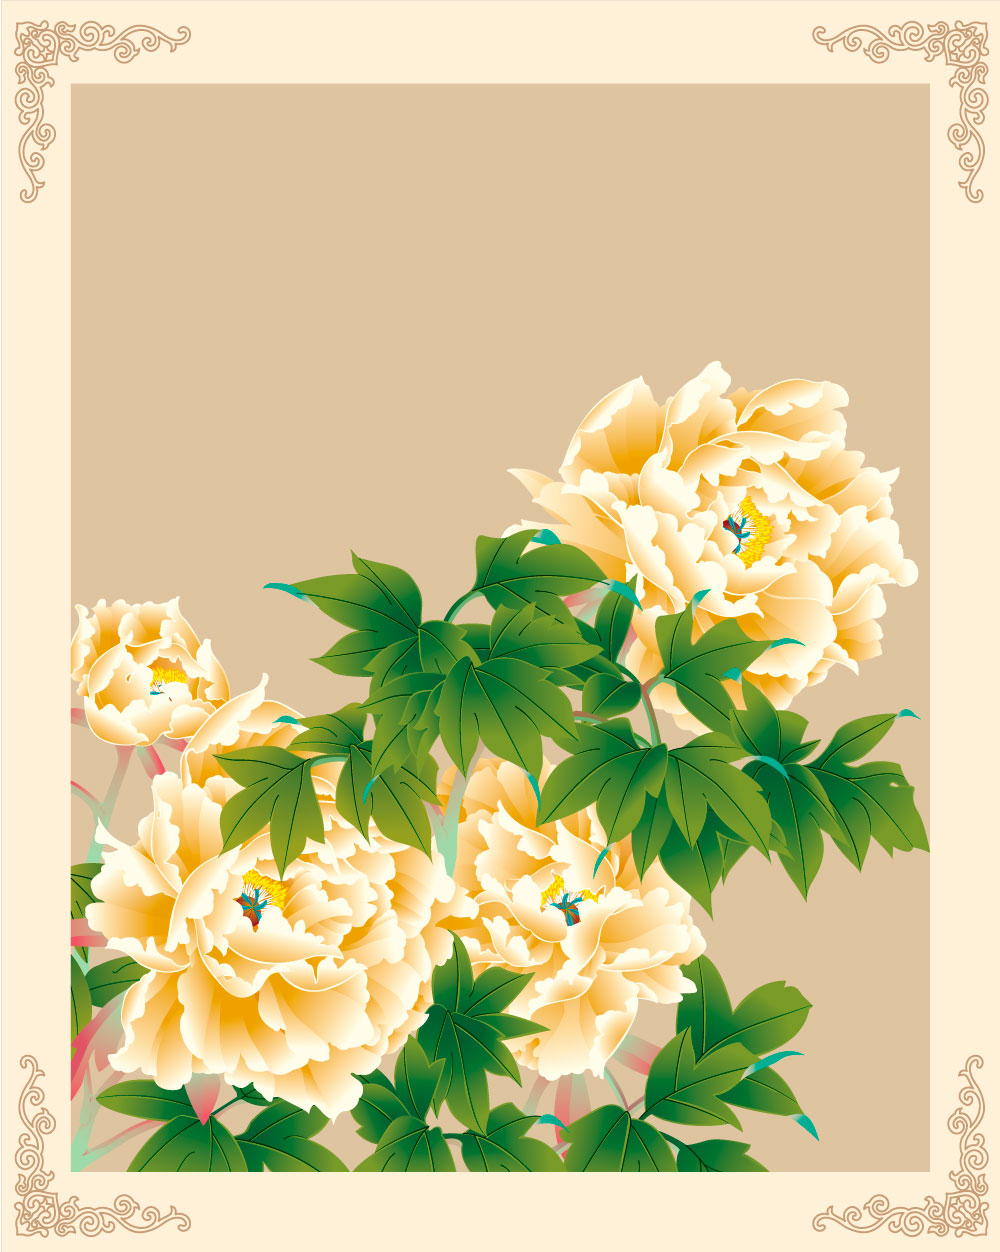 中国式黄色开花的牡丹AI矢量图像